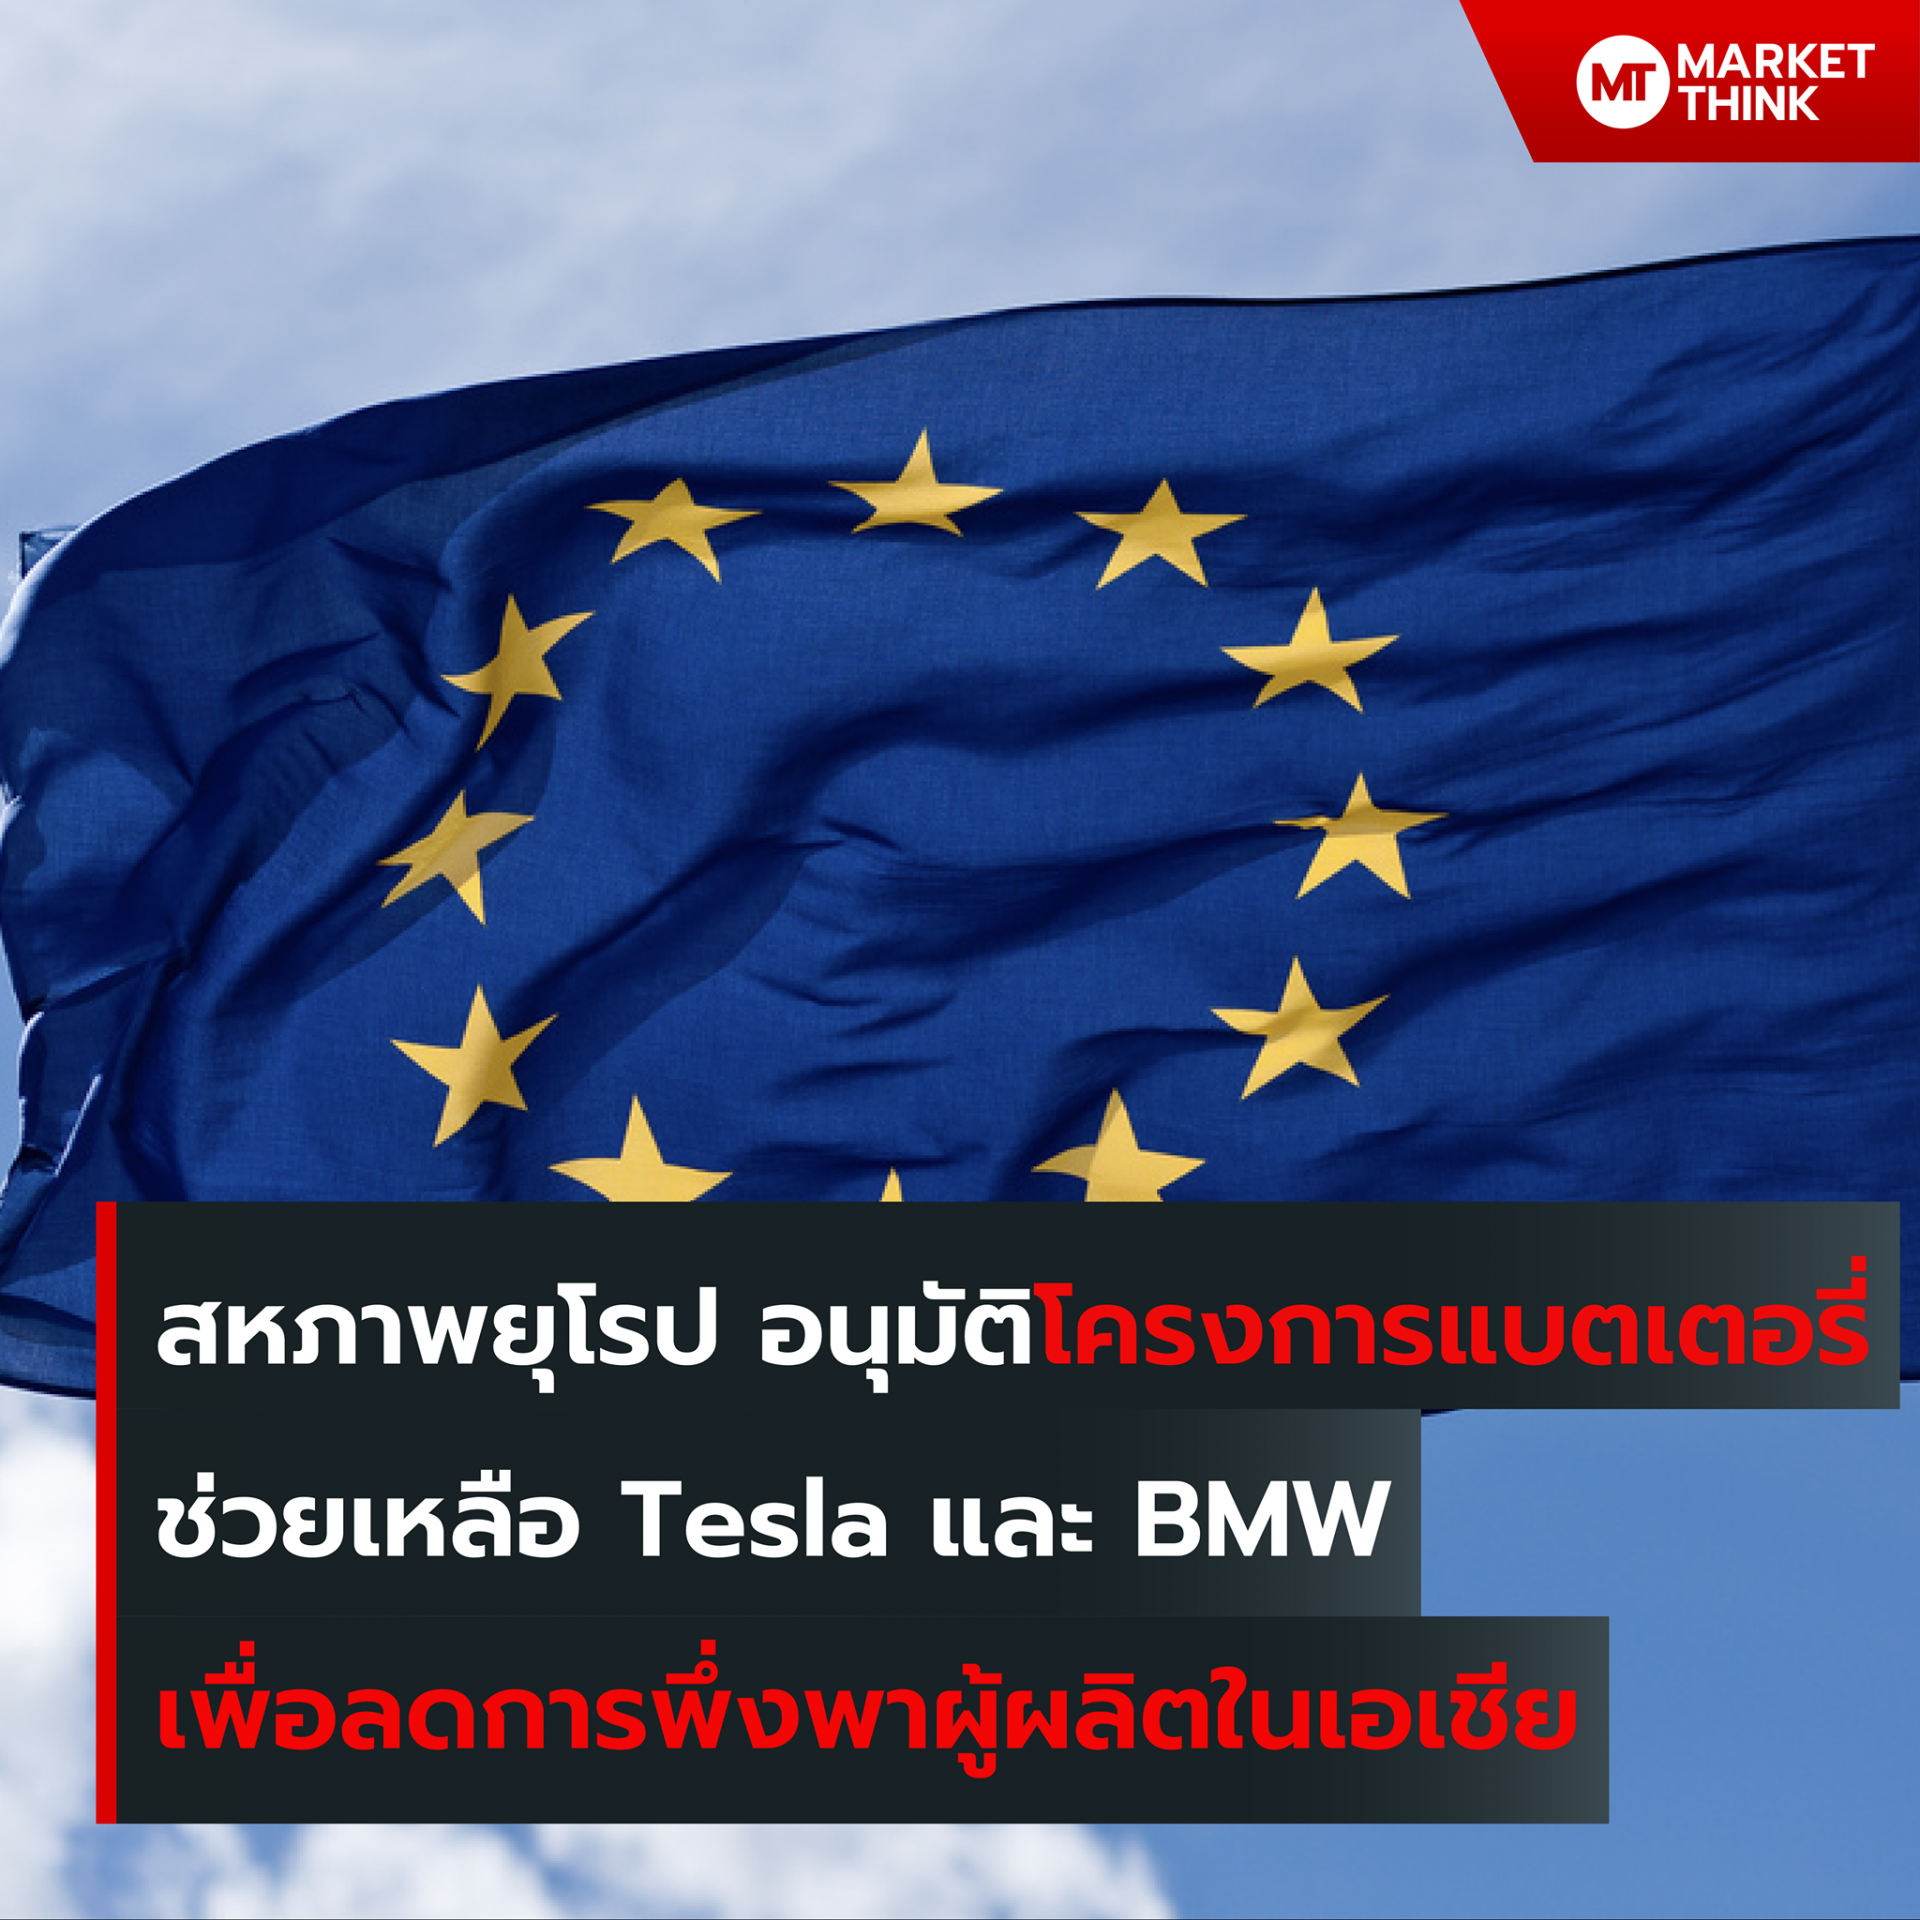 สหภาพยุโรป อนุมัติโครงการแบตเตอรี่ ช่วยเหลือ Tesla และ BMW เพื่อลดการพึ่งพาผู้ผลิตในเอเชีย คณะกรรมาธิการยุโรป ได้อนุมัติโครงการ European Battery Innovation ที่มีเป้าหมายเพื่อยกระดับอุตสาหกรรมรถยนต์ไฟฟ้าในยุโรป ลดการปล่อยก๊าซเรือนกระจก จากภาคการขนส่ง